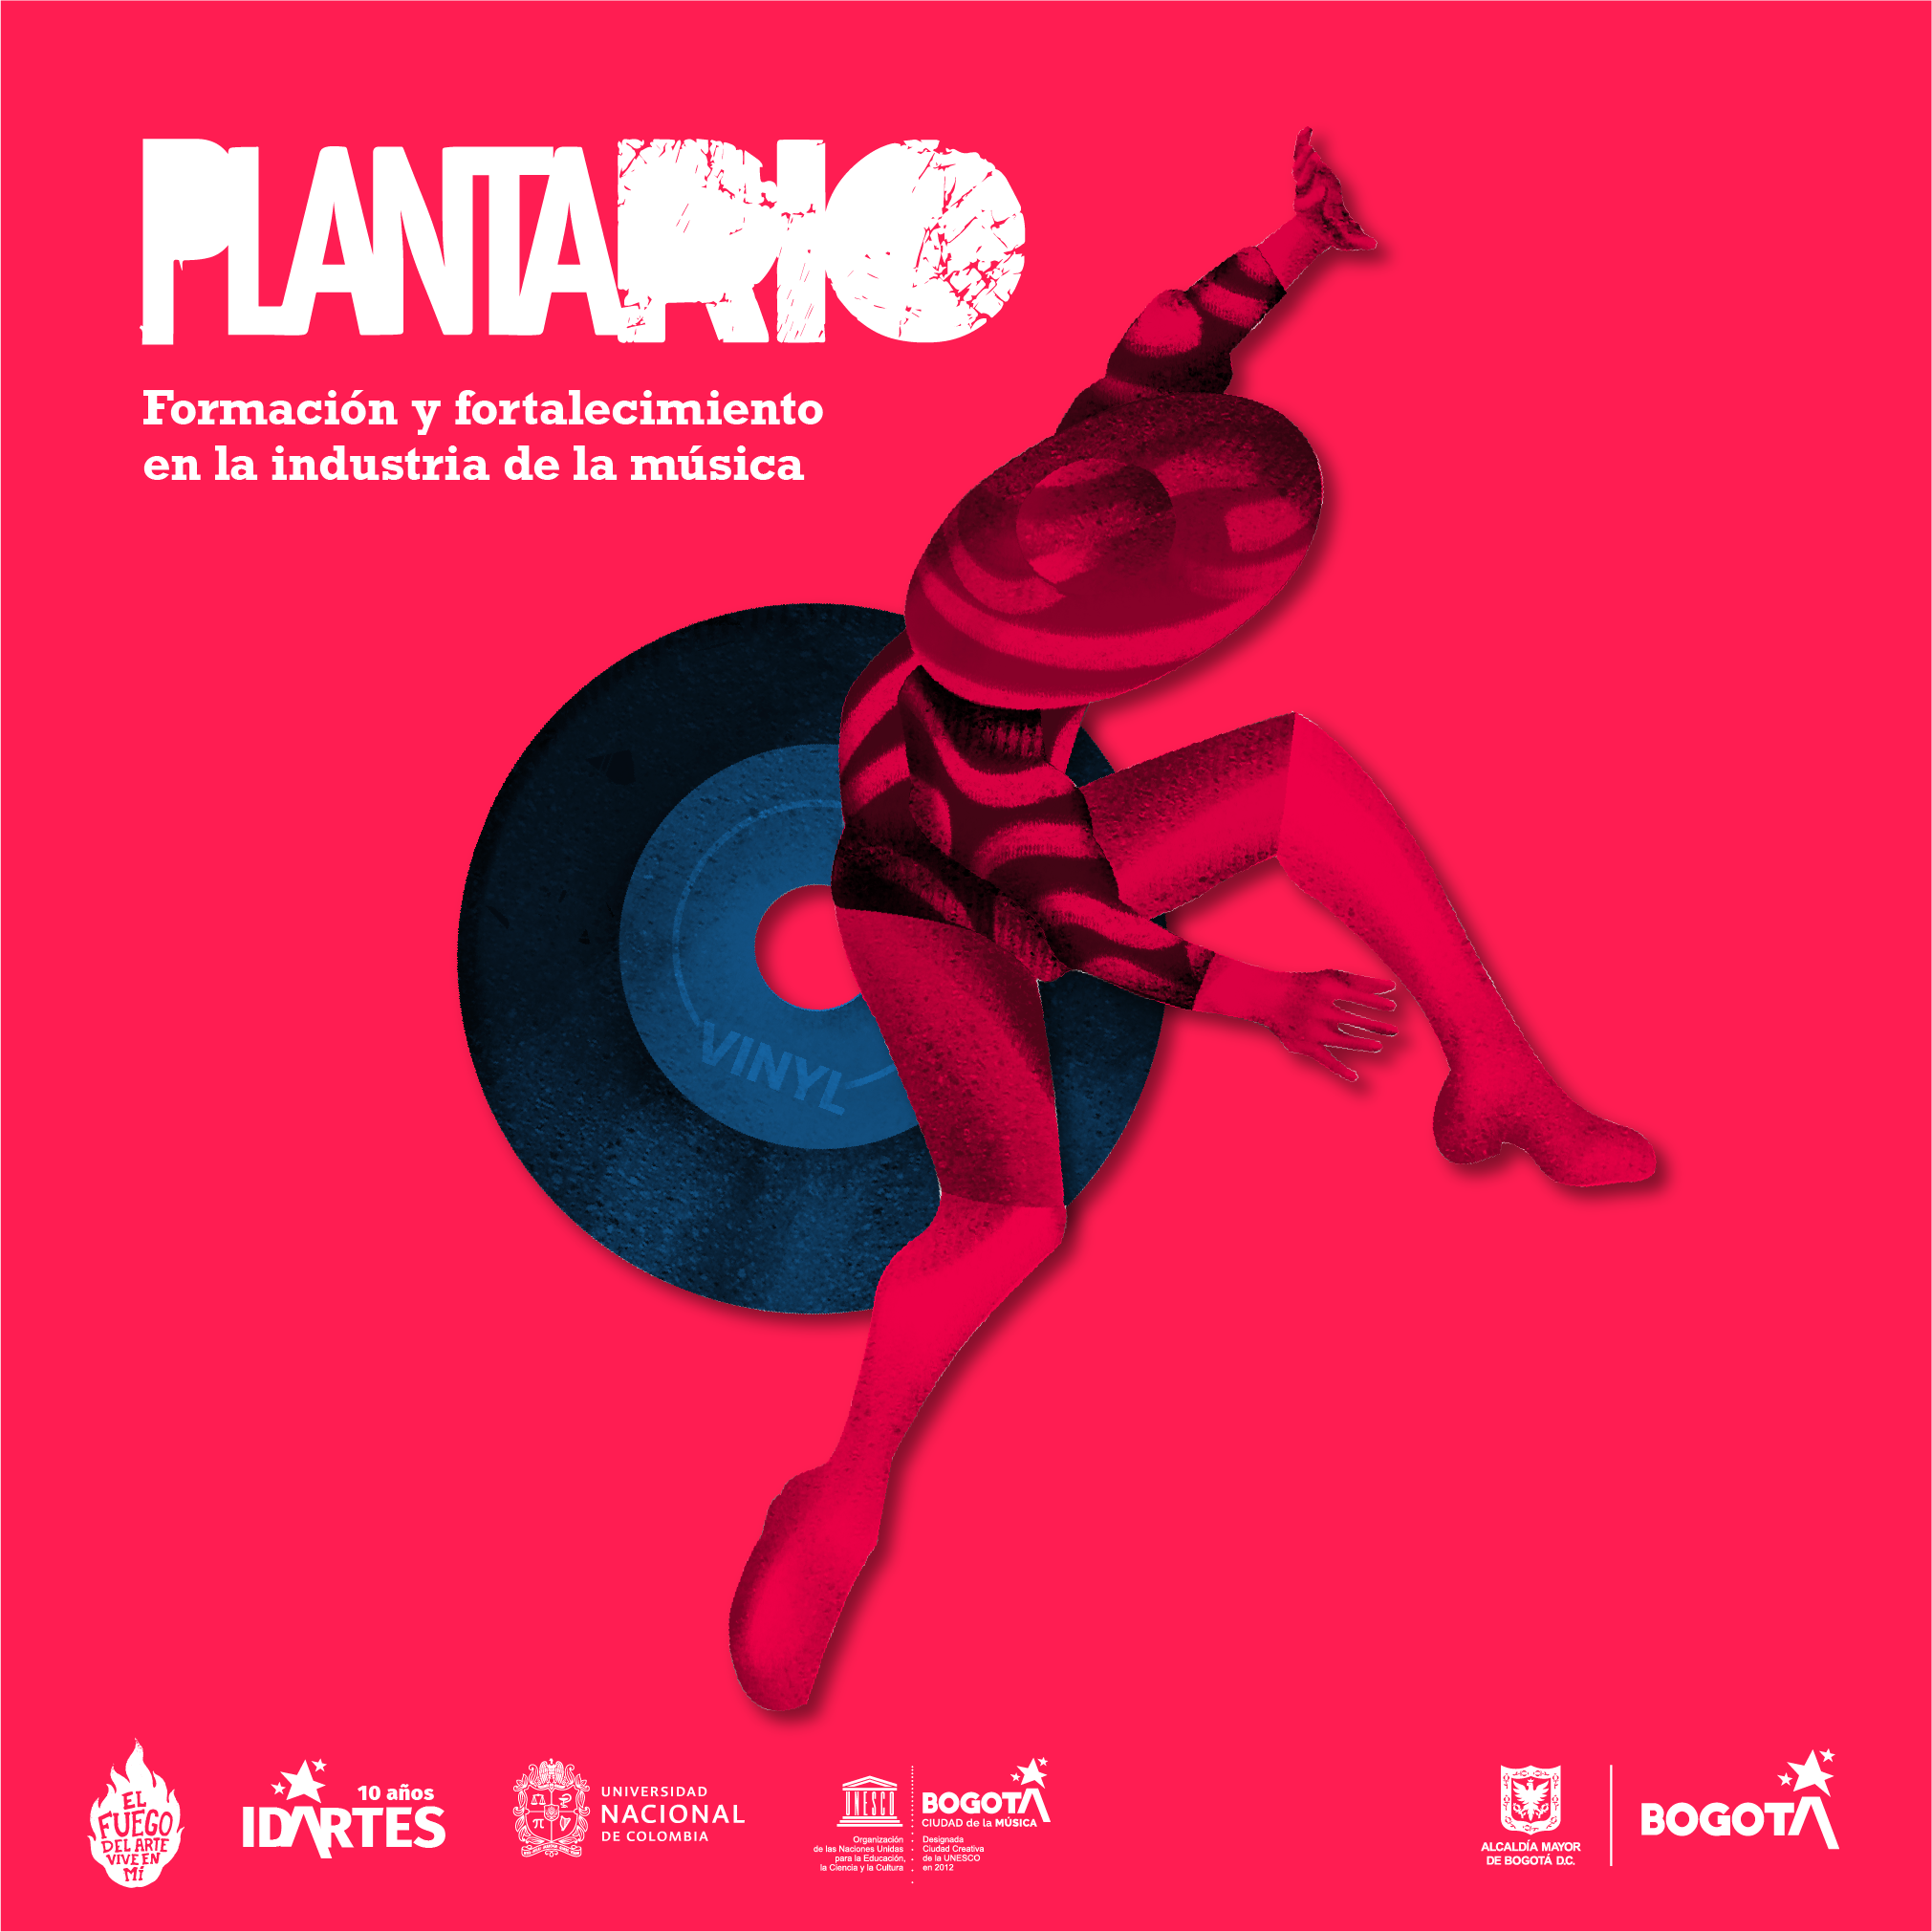 Pieza Gráfica - Plantario - Formación y fortalecimiento en la industria de la música -2021